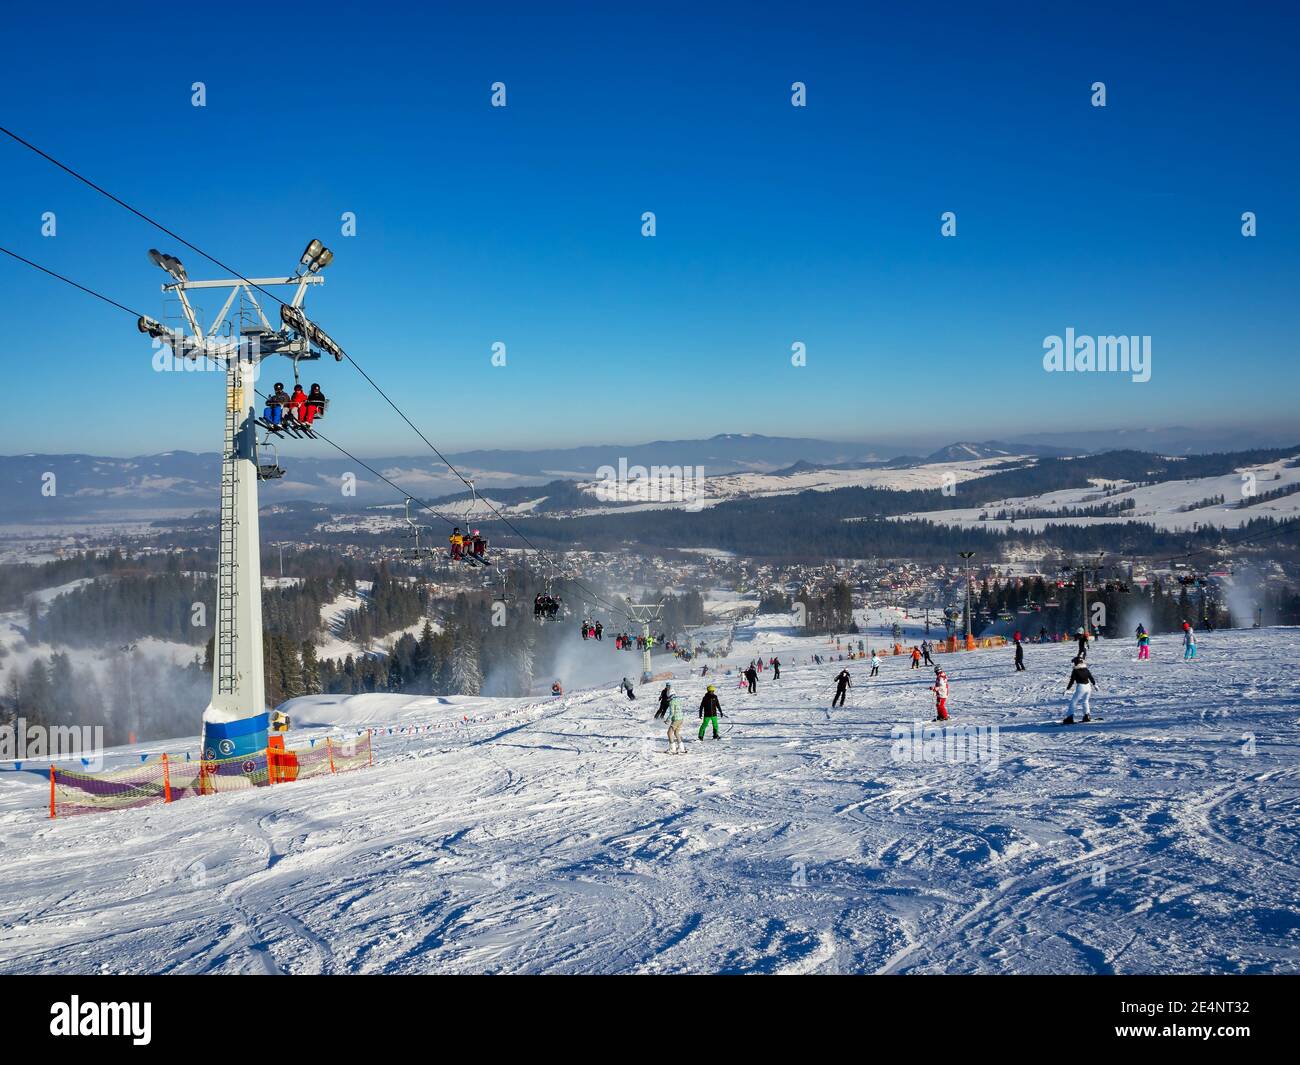 Skipiste, Sessellift, Skifahrer und Snowboarder im Skigebiet Bialka Tatrzanska in Polen im Winter. Schneekanonen in Aktion Stockfoto